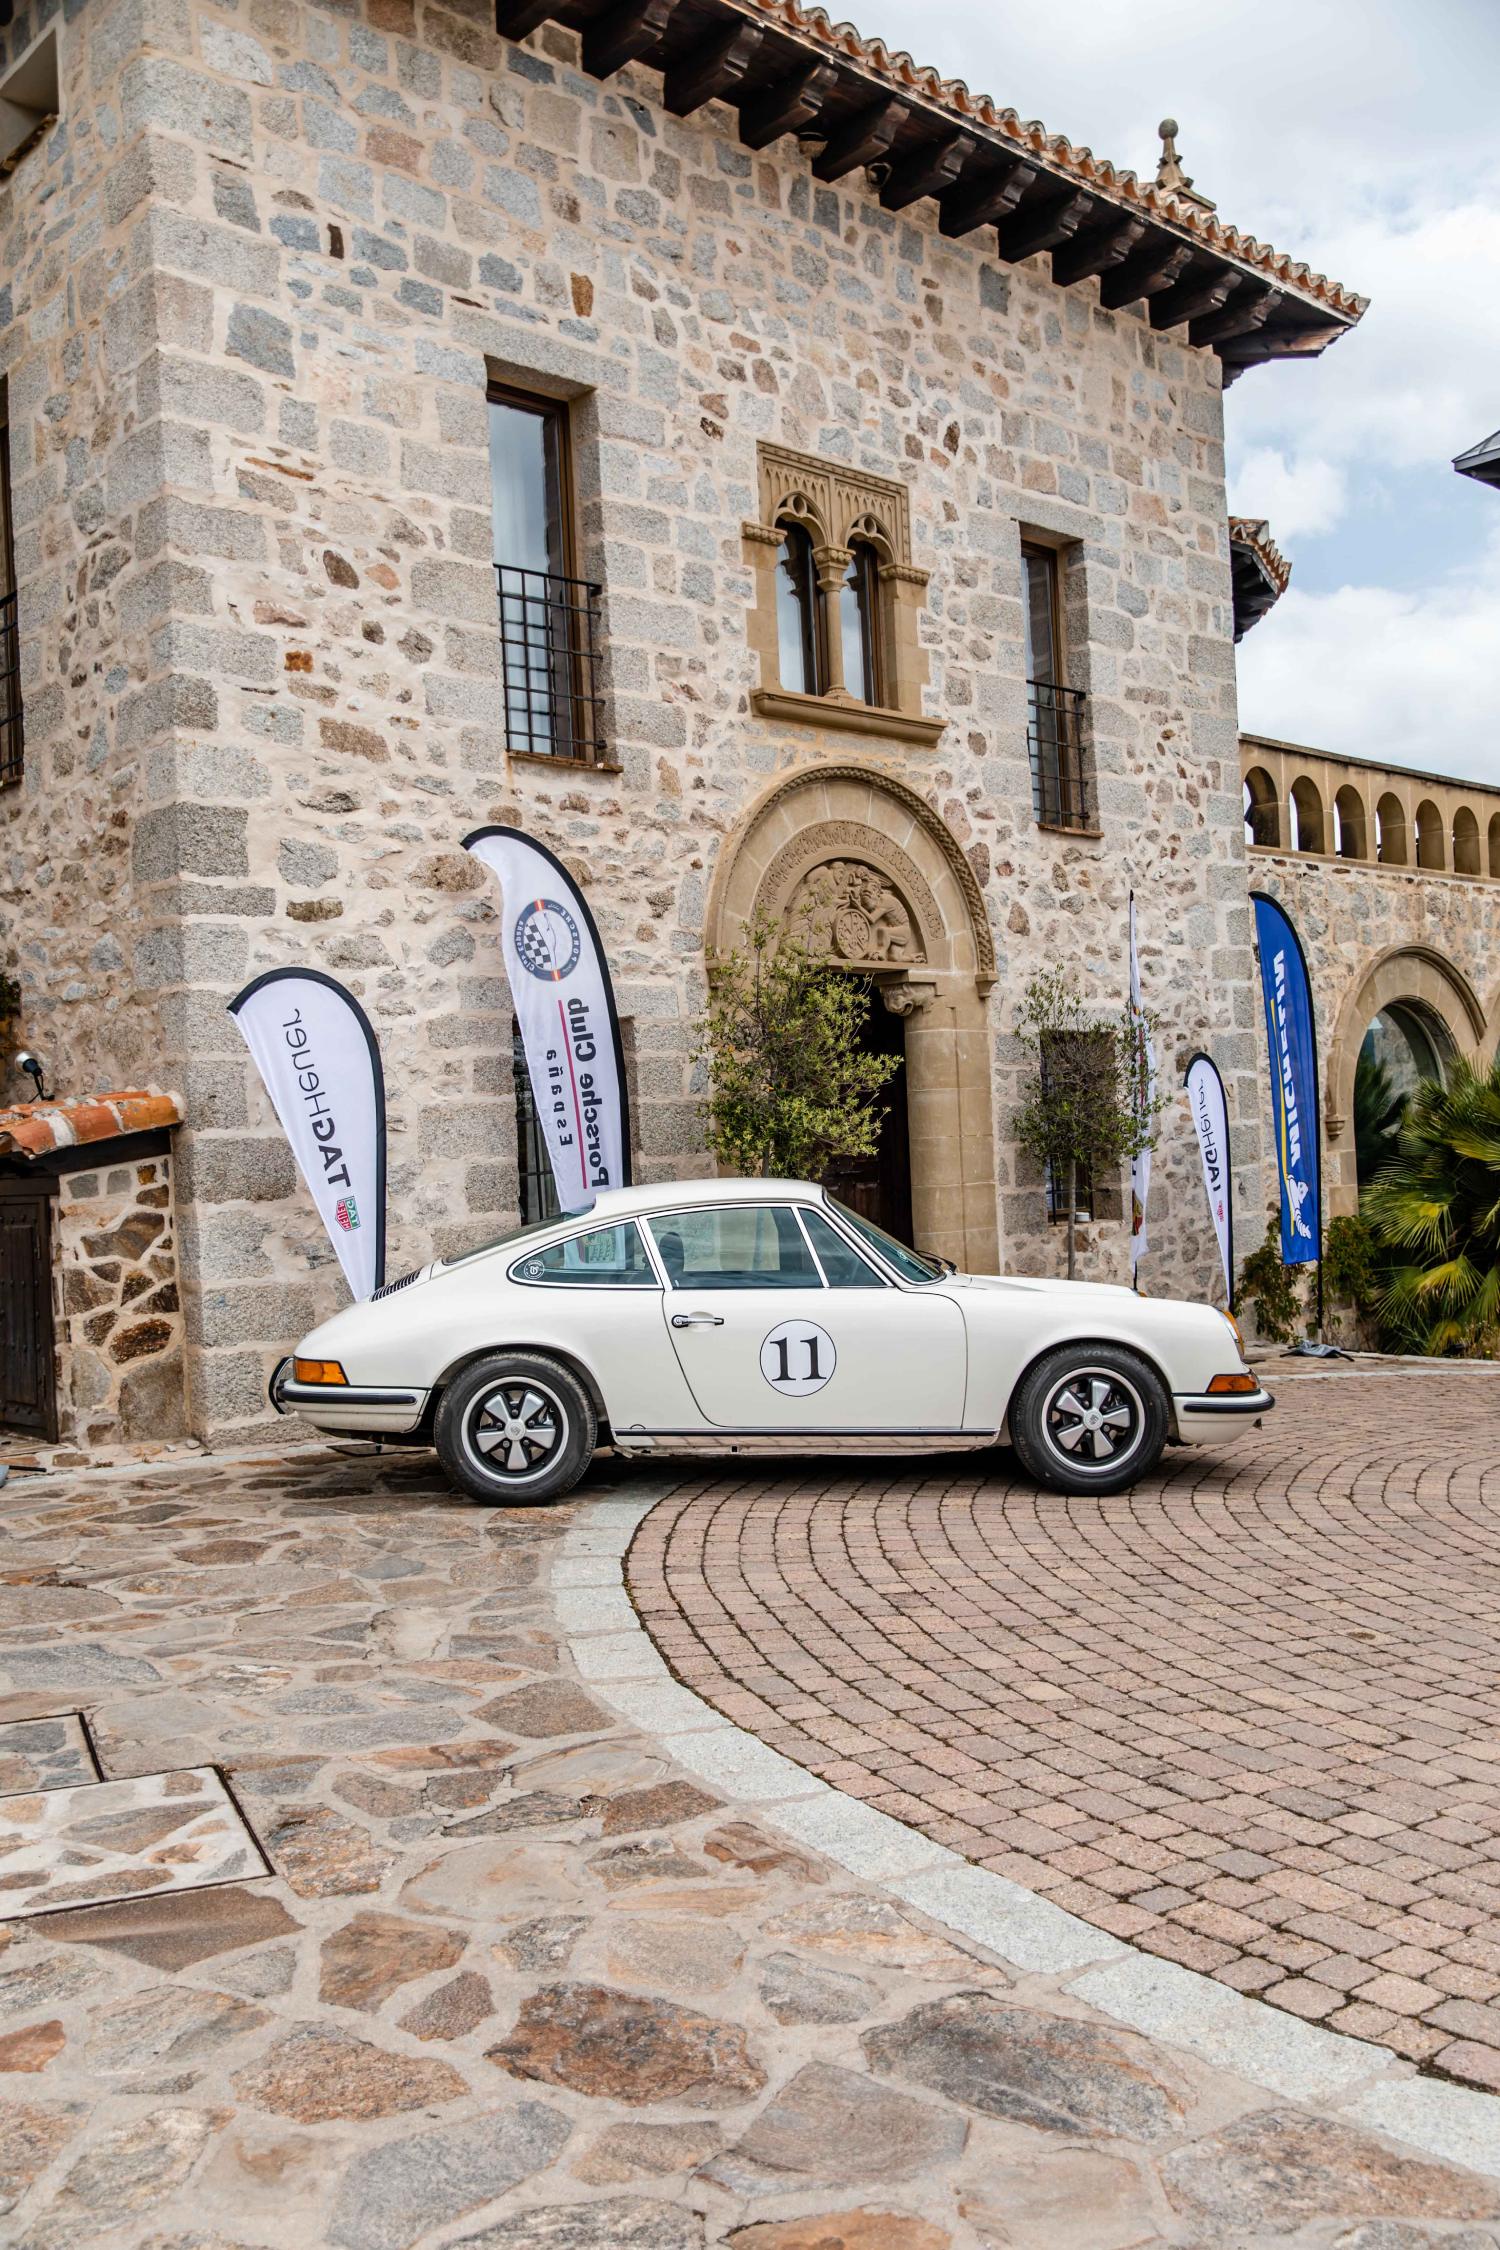 40-Aniversario-Club-Porsche-Espana-14 SemanalClásico - Revista online de coches clásicos, de colección y sport - madrid